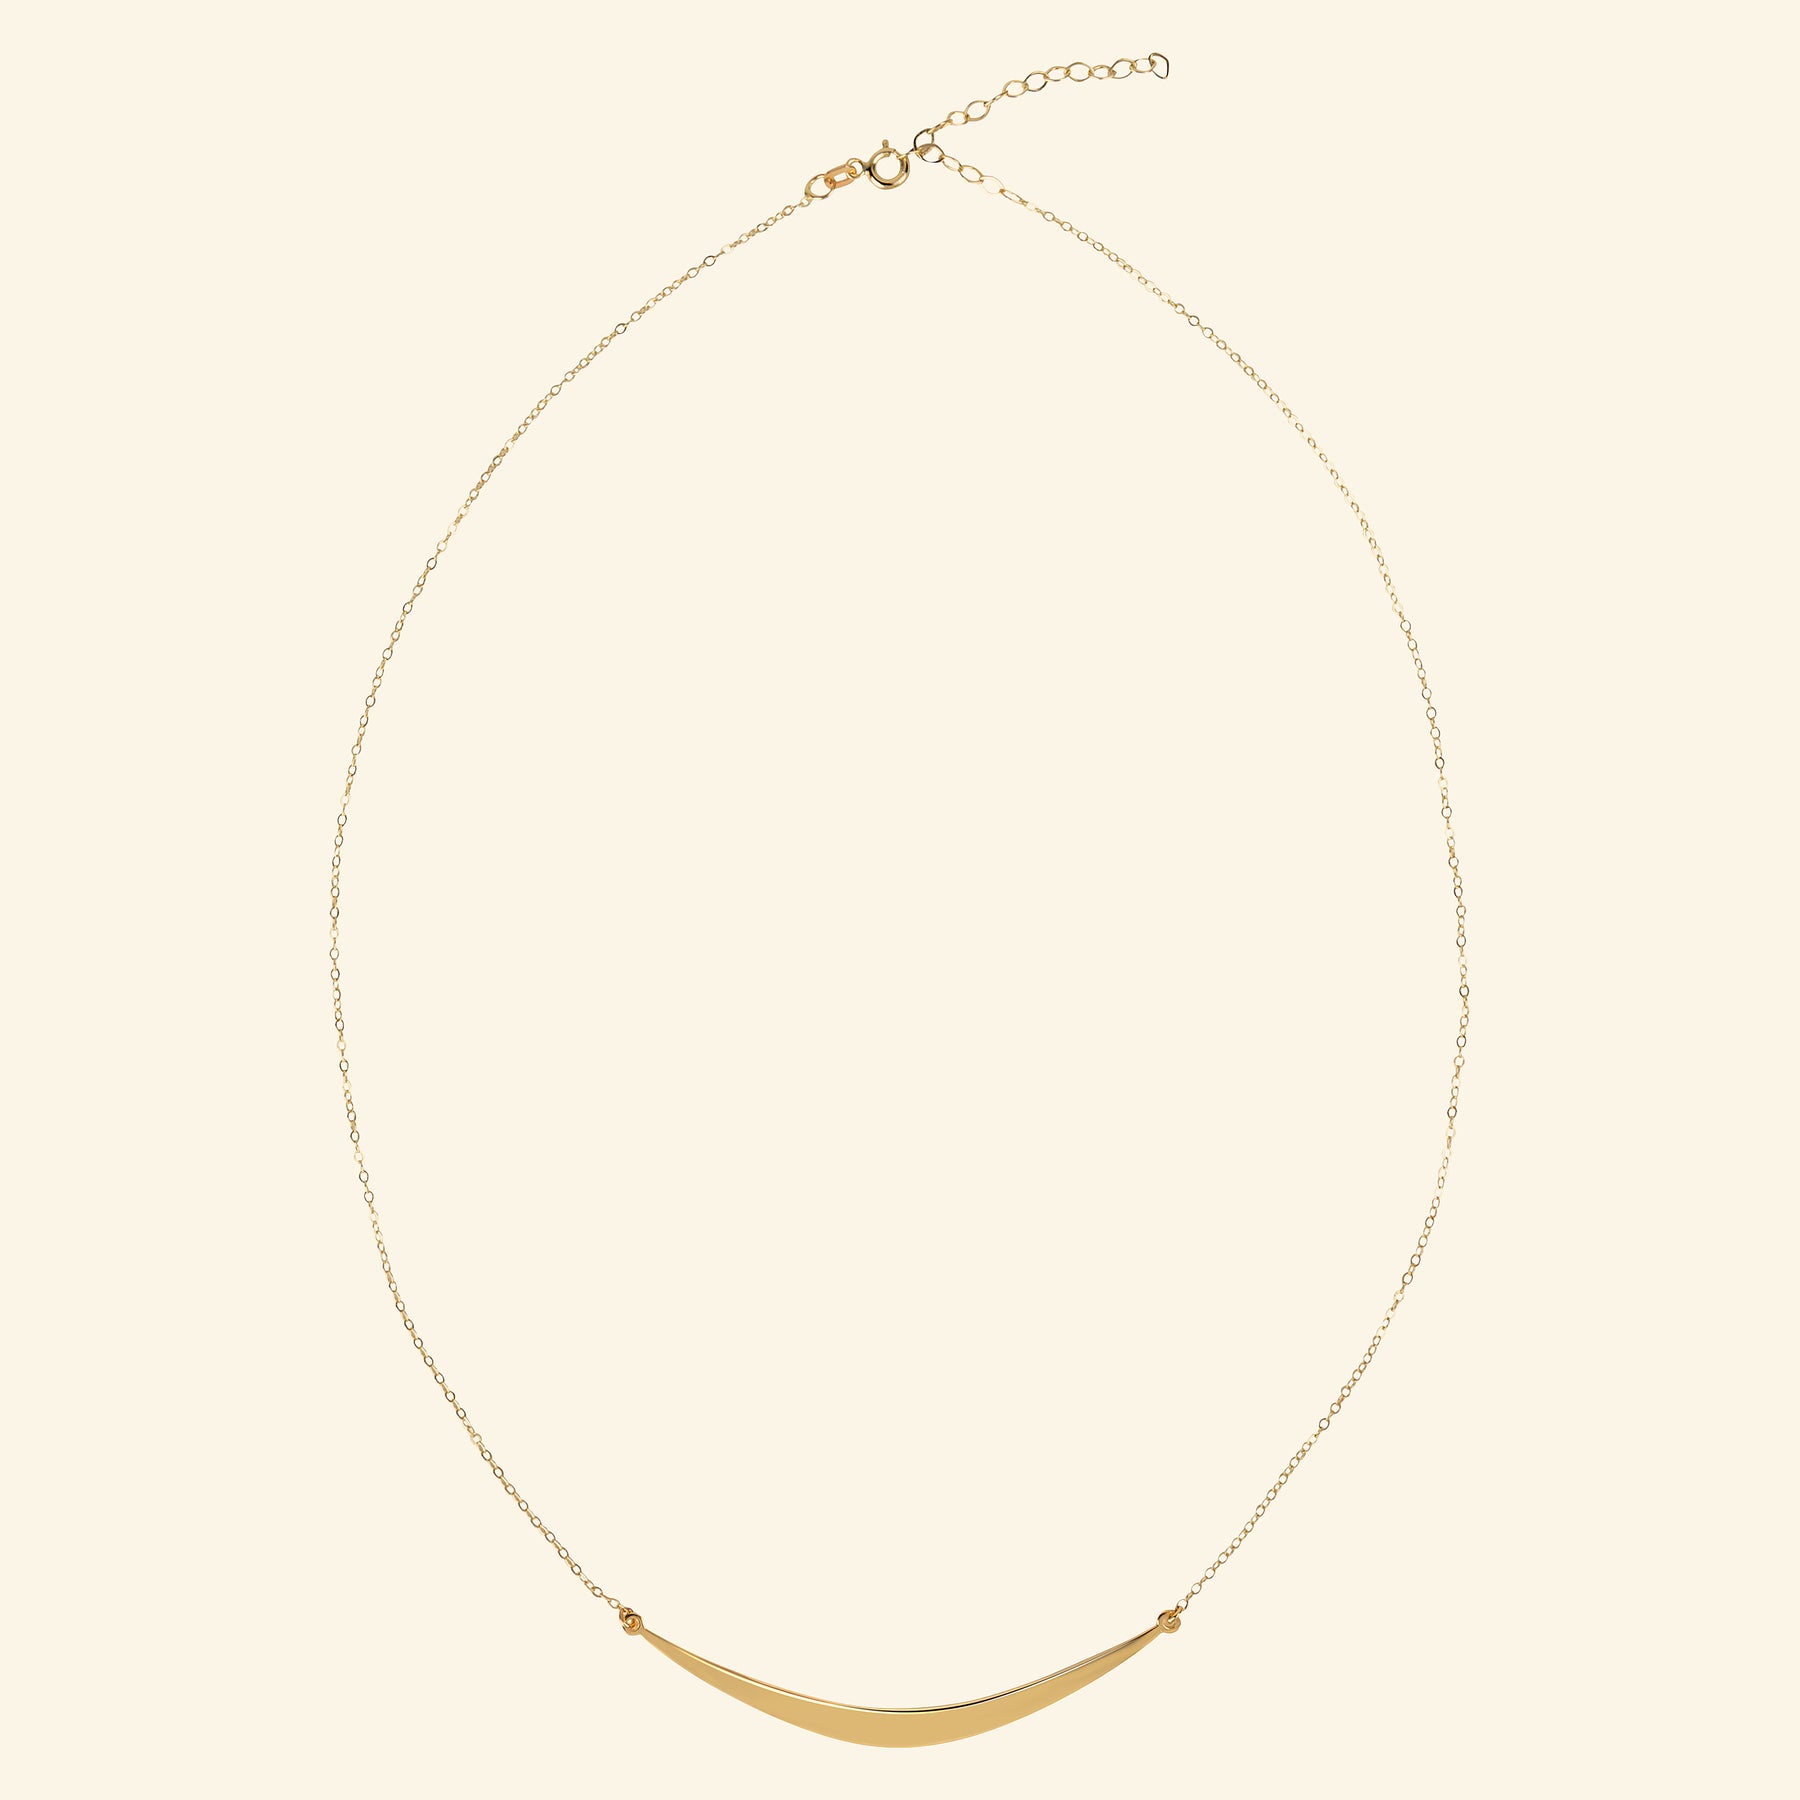 Half moon 10K necklace